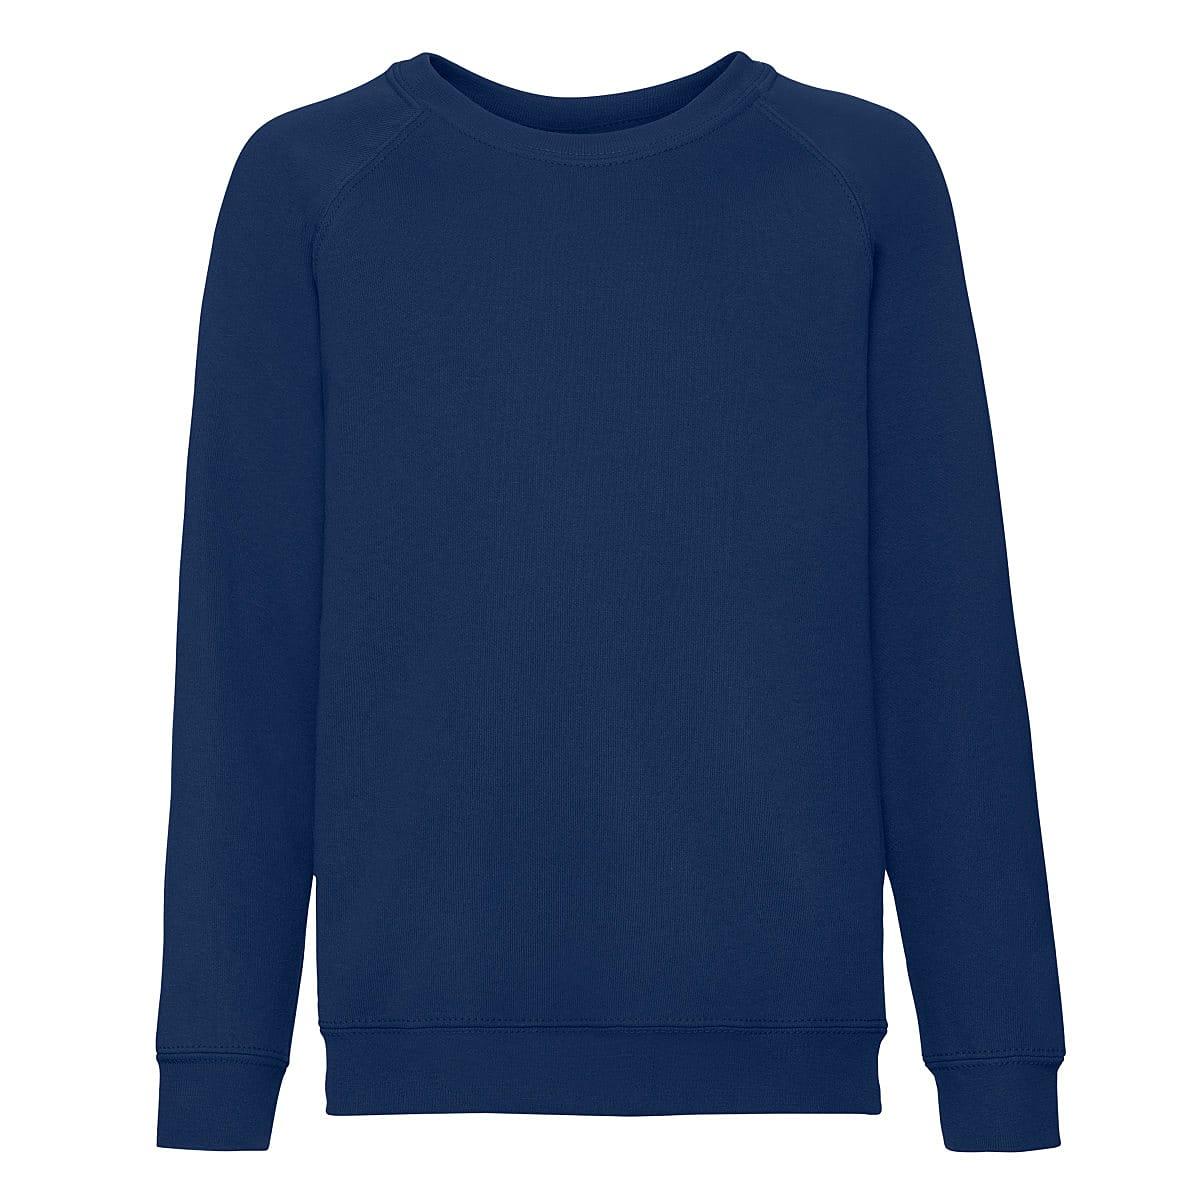 Fruit Of The Loom Childrens Raglan Sleeve Sweatshirt in Navy Blue (Product Code: 62039)